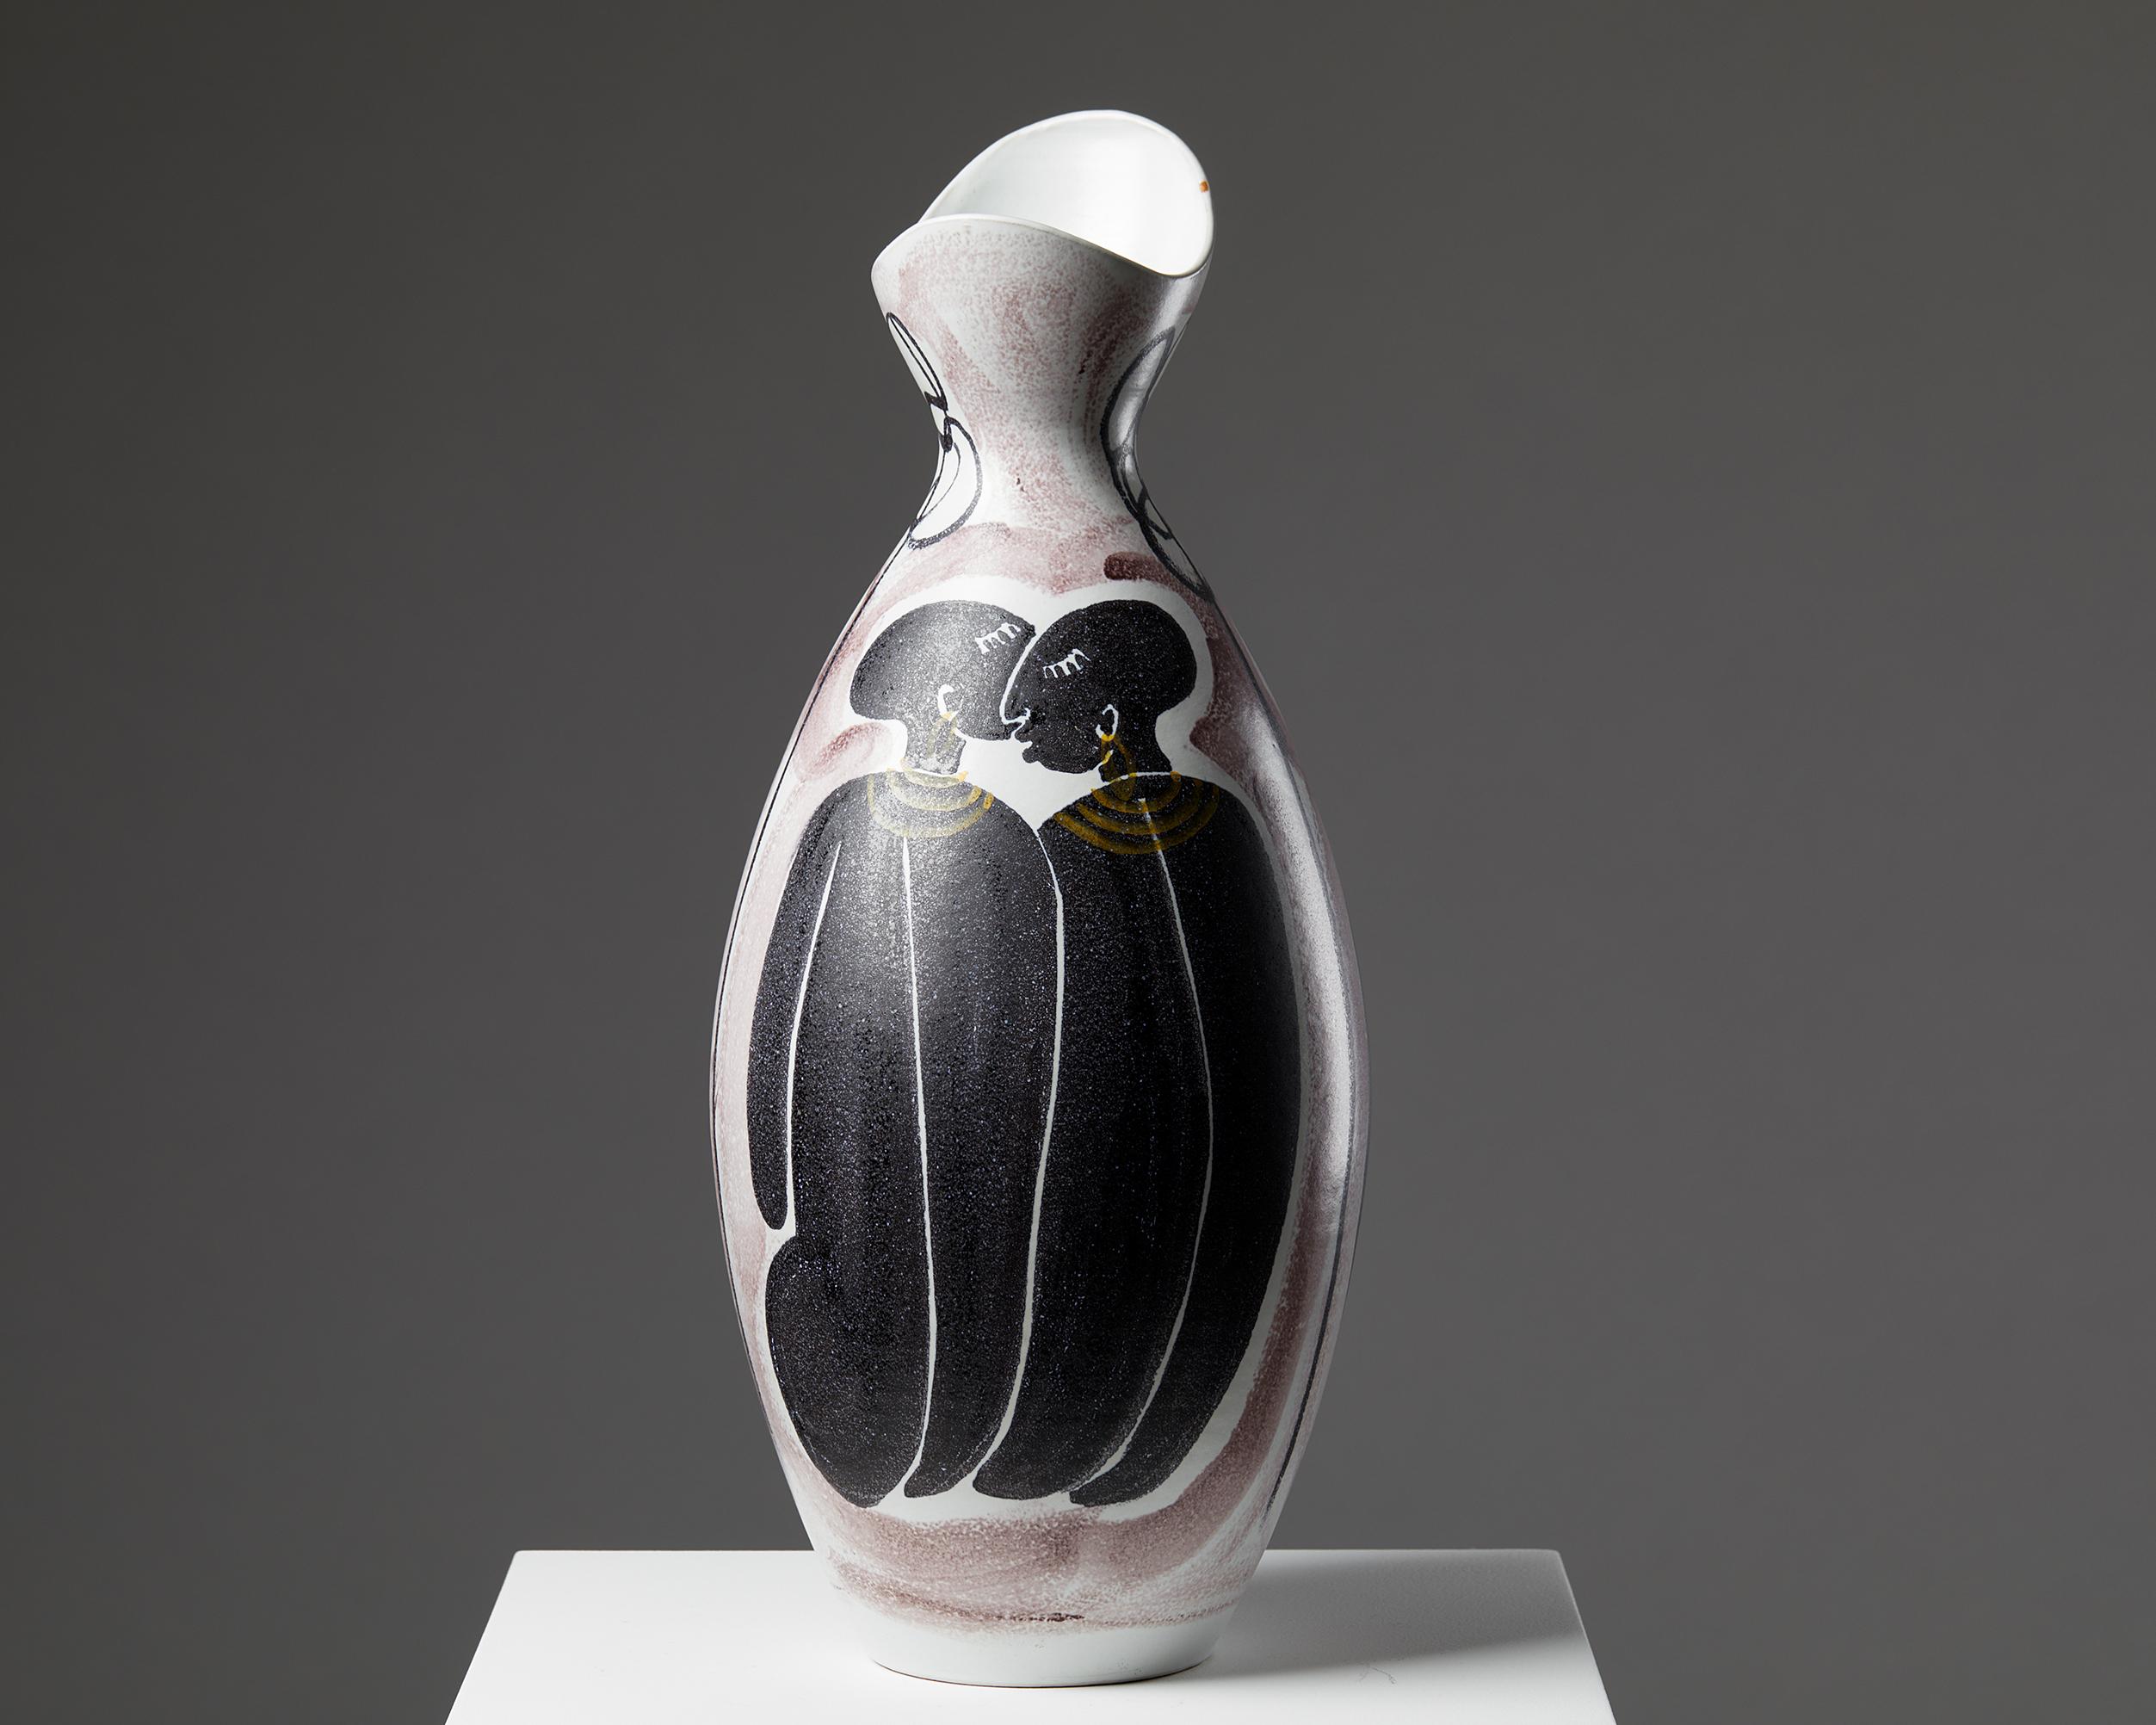 Vase conçu par Mette Doller pour Alfred Johansson,
Suède. 1950s.
Grès.

Signé.

Mesures : Hauteur : 52 cm / 1' 8 1/2